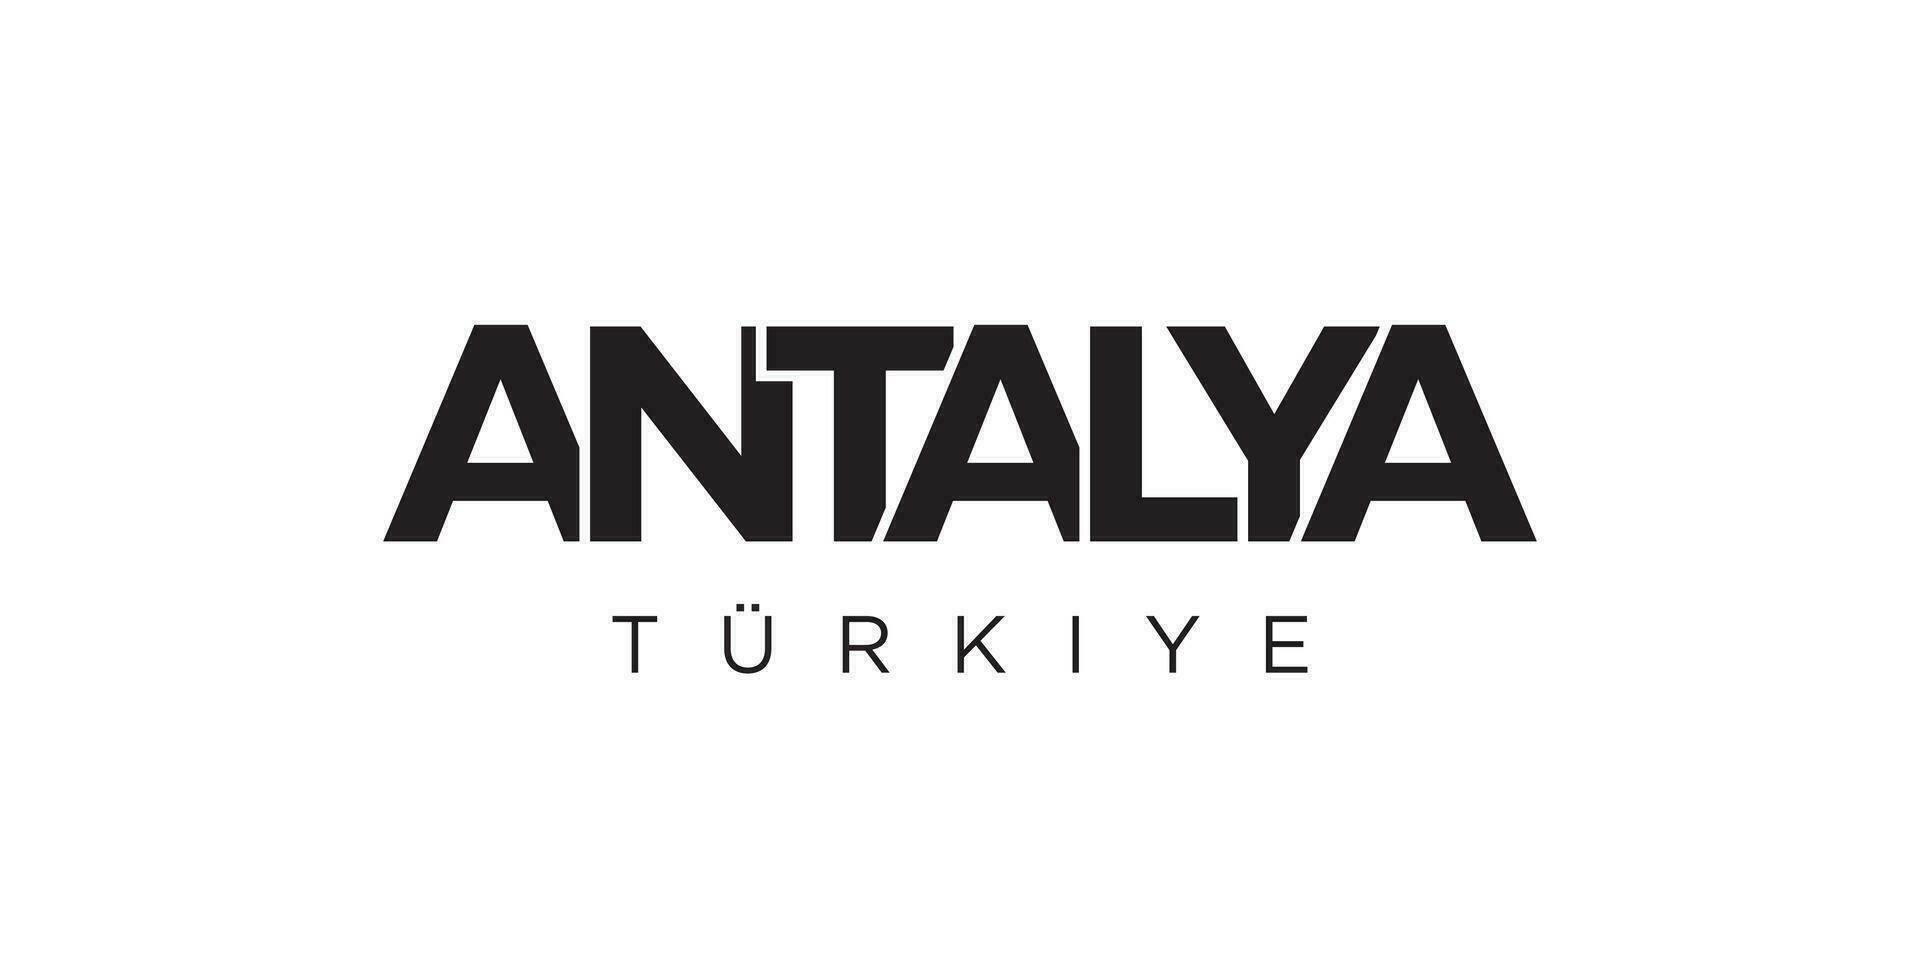 Antalya dans le dinde emblème. le conception Caractéristiques une géométrique style, vecteur illustration avec audacieux typographie dans une moderne Police de caractère. le graphique slogan caractères.